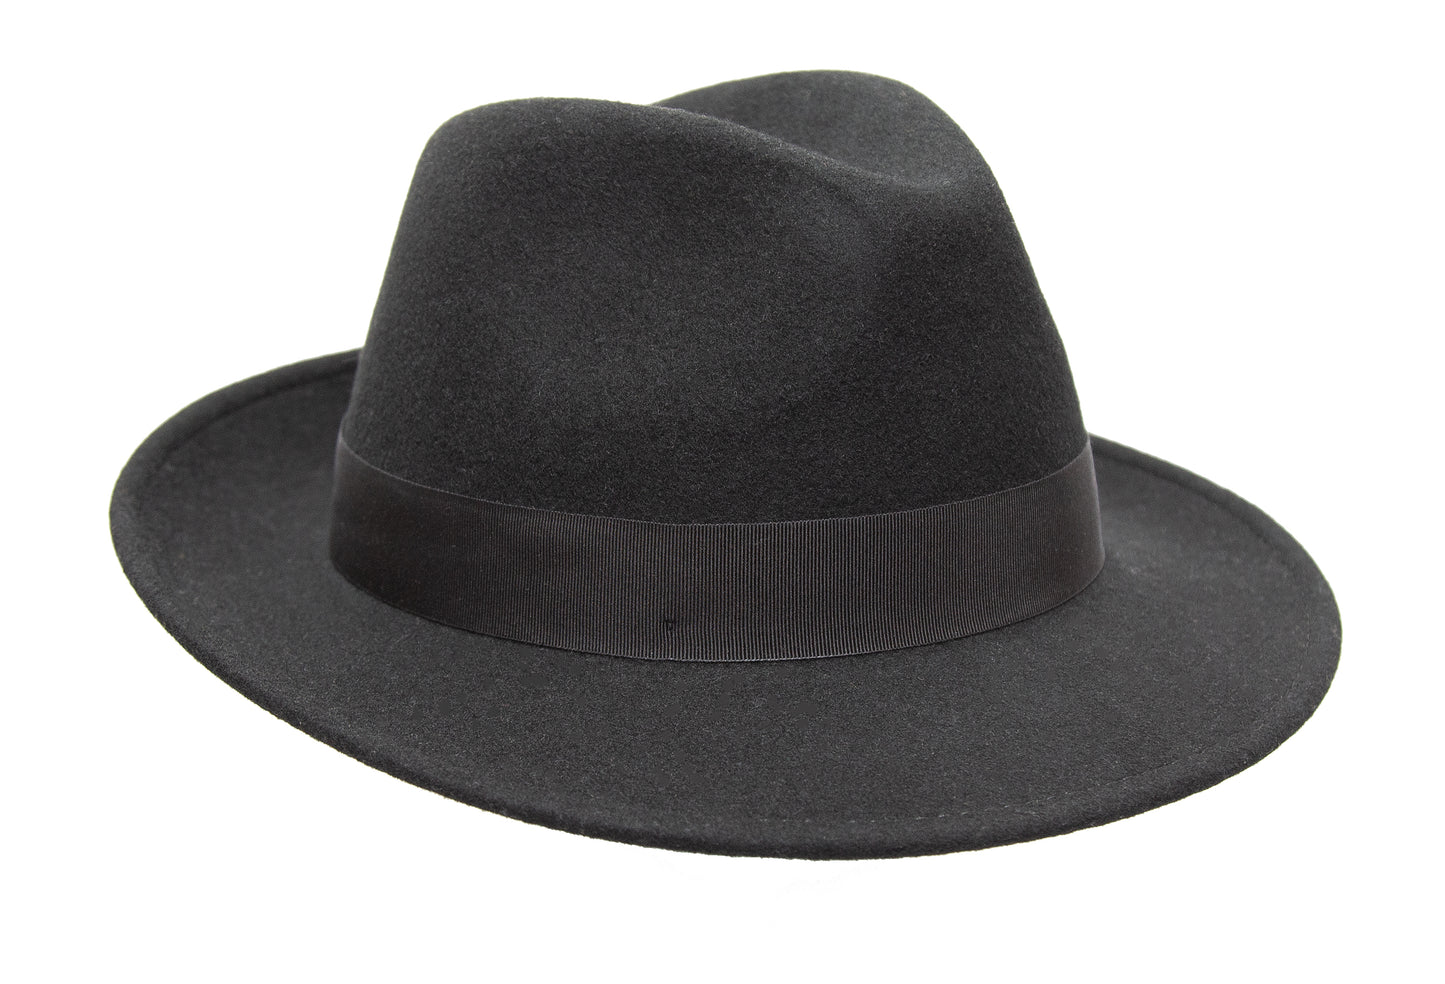 knautschbarer Wollfilzhut für Damen und Herren mit breitem schwarzem Textil Hutband